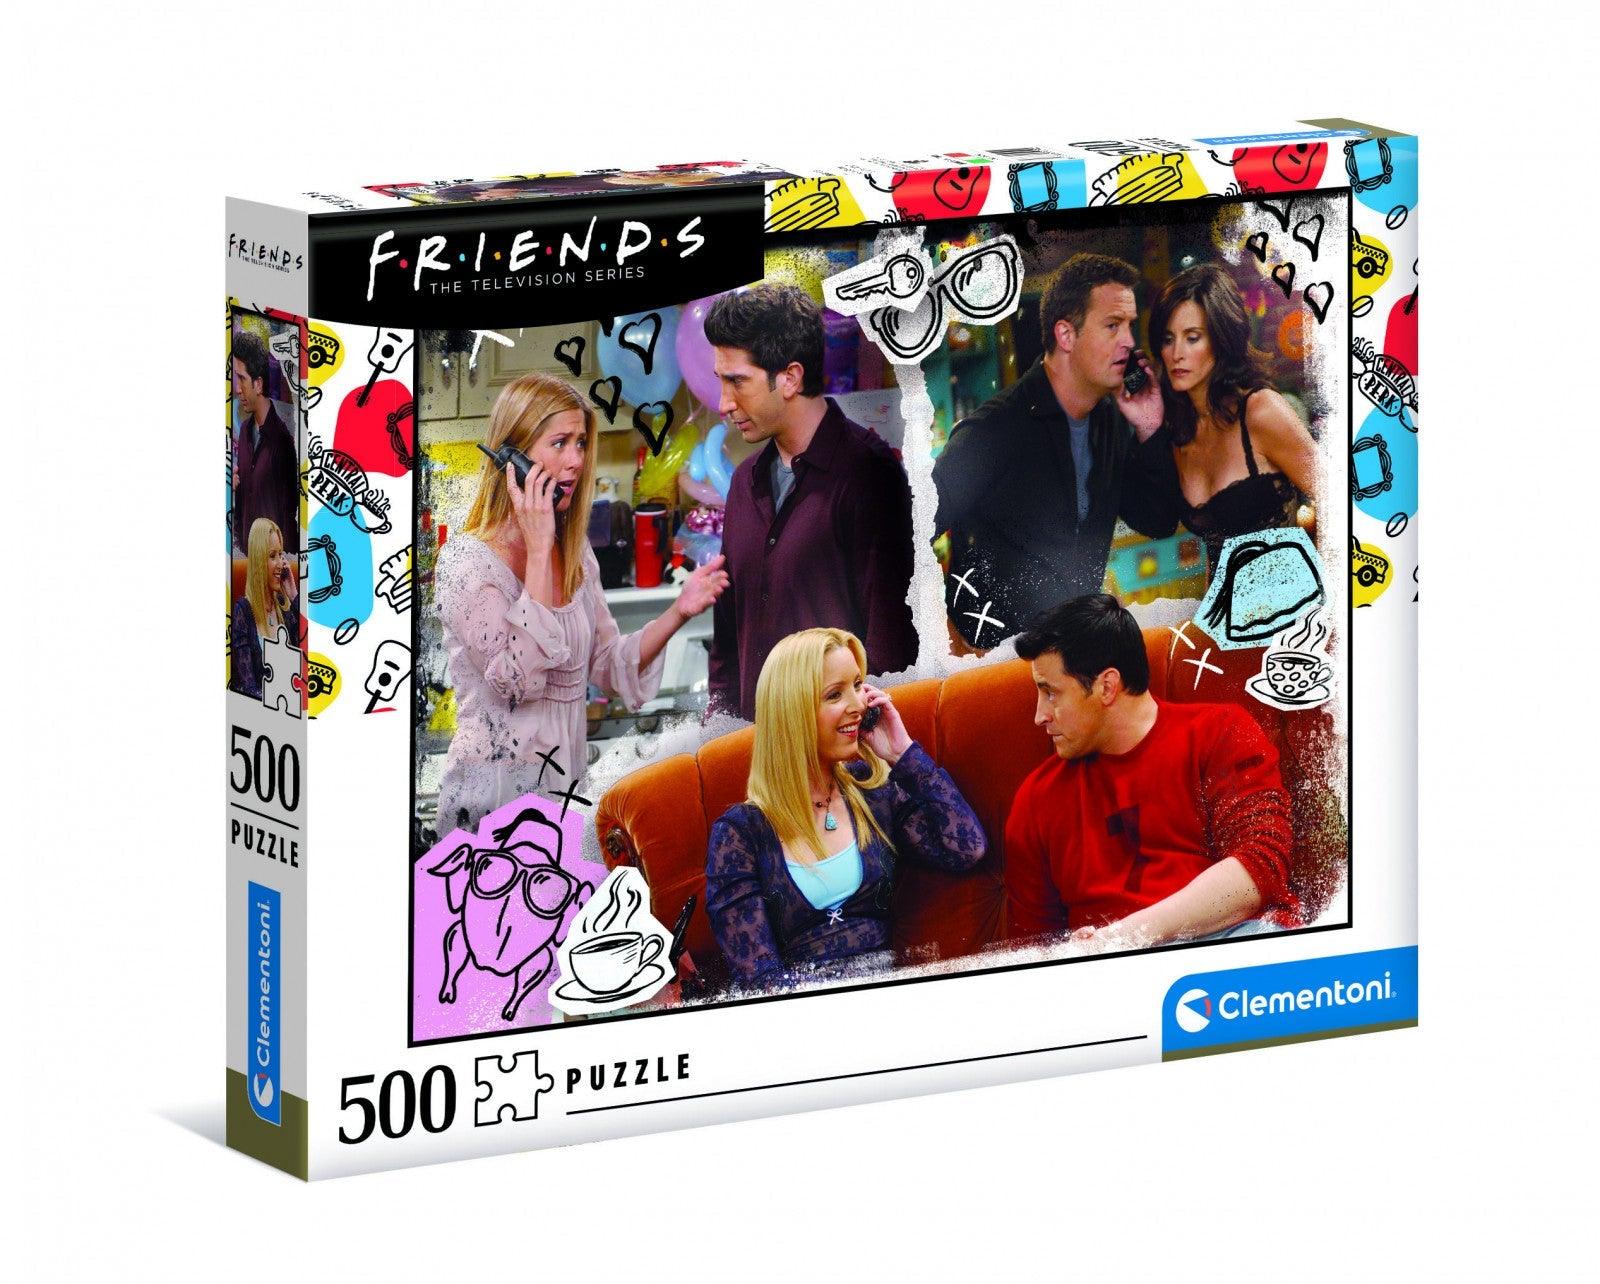 VR-97665 Clementoni Puzzle Friends on the Phone 500 pieces - Clementoni - Titan Pop Culture